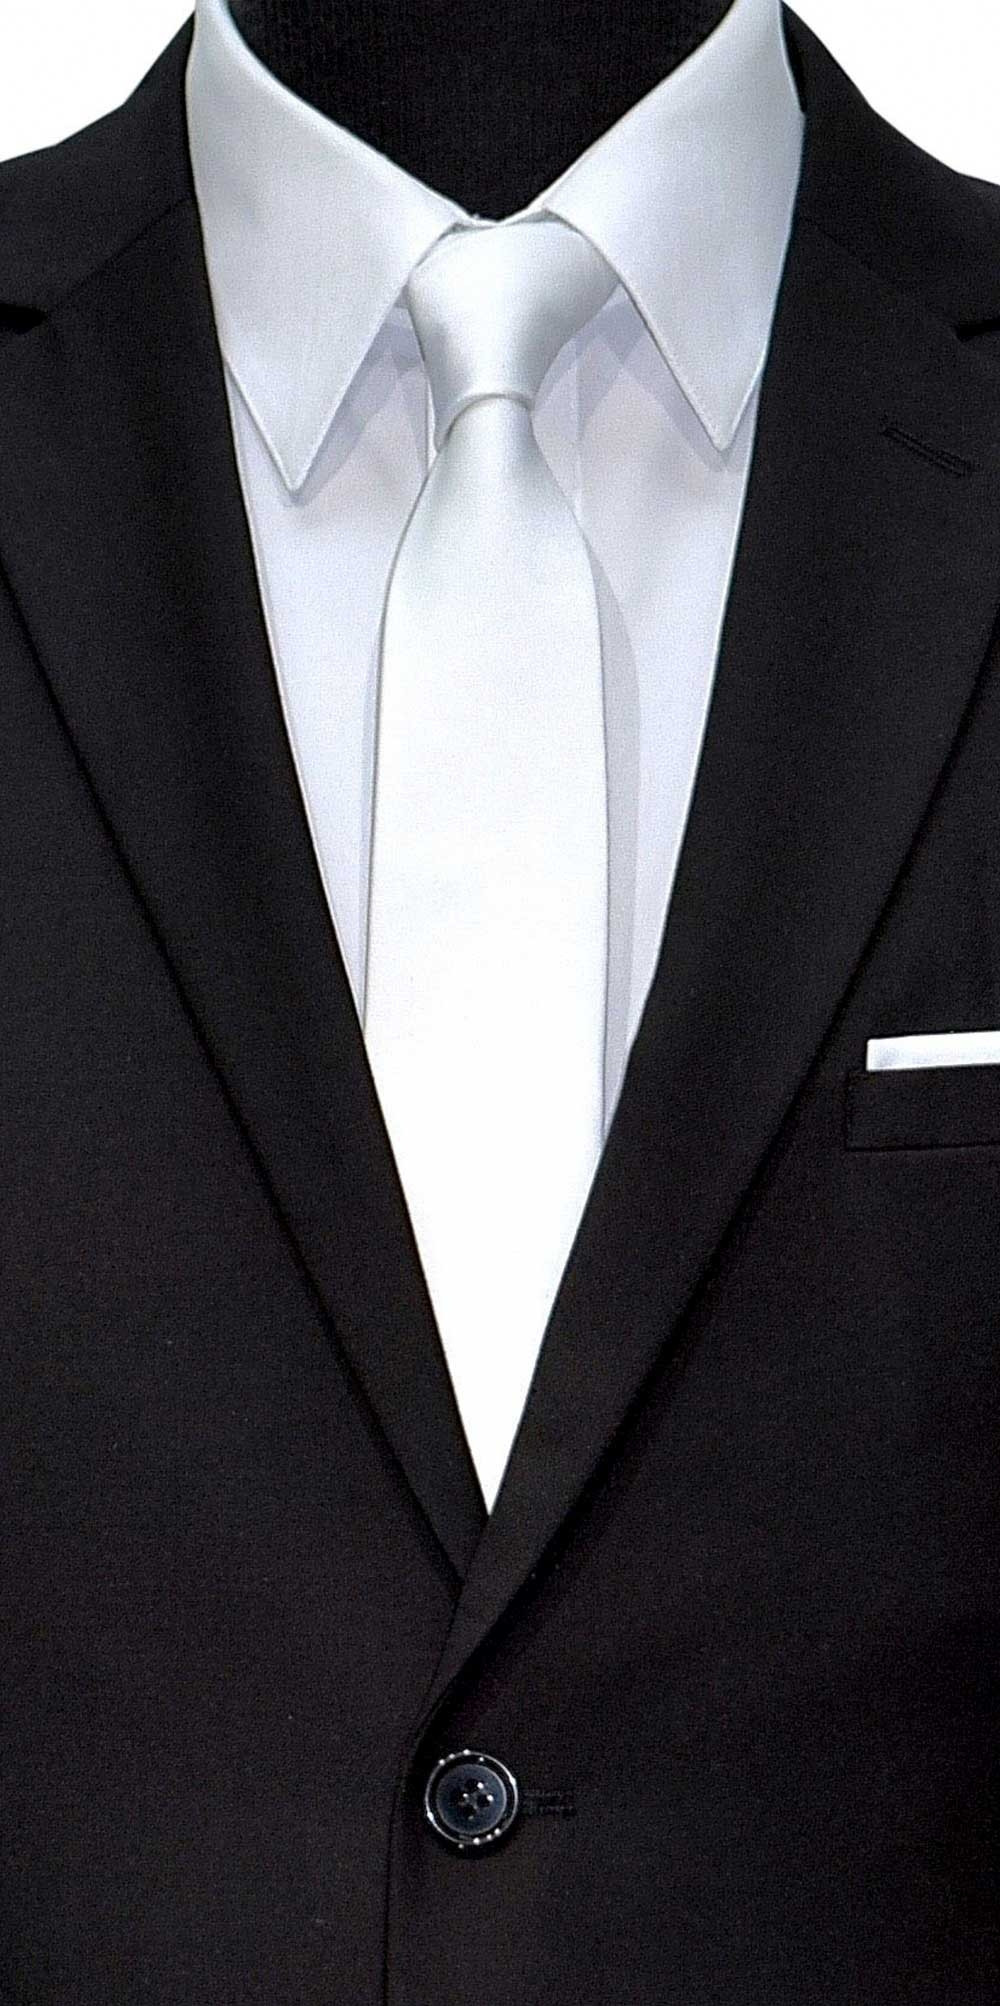 white satin skinny men's tie at TuxBling.com